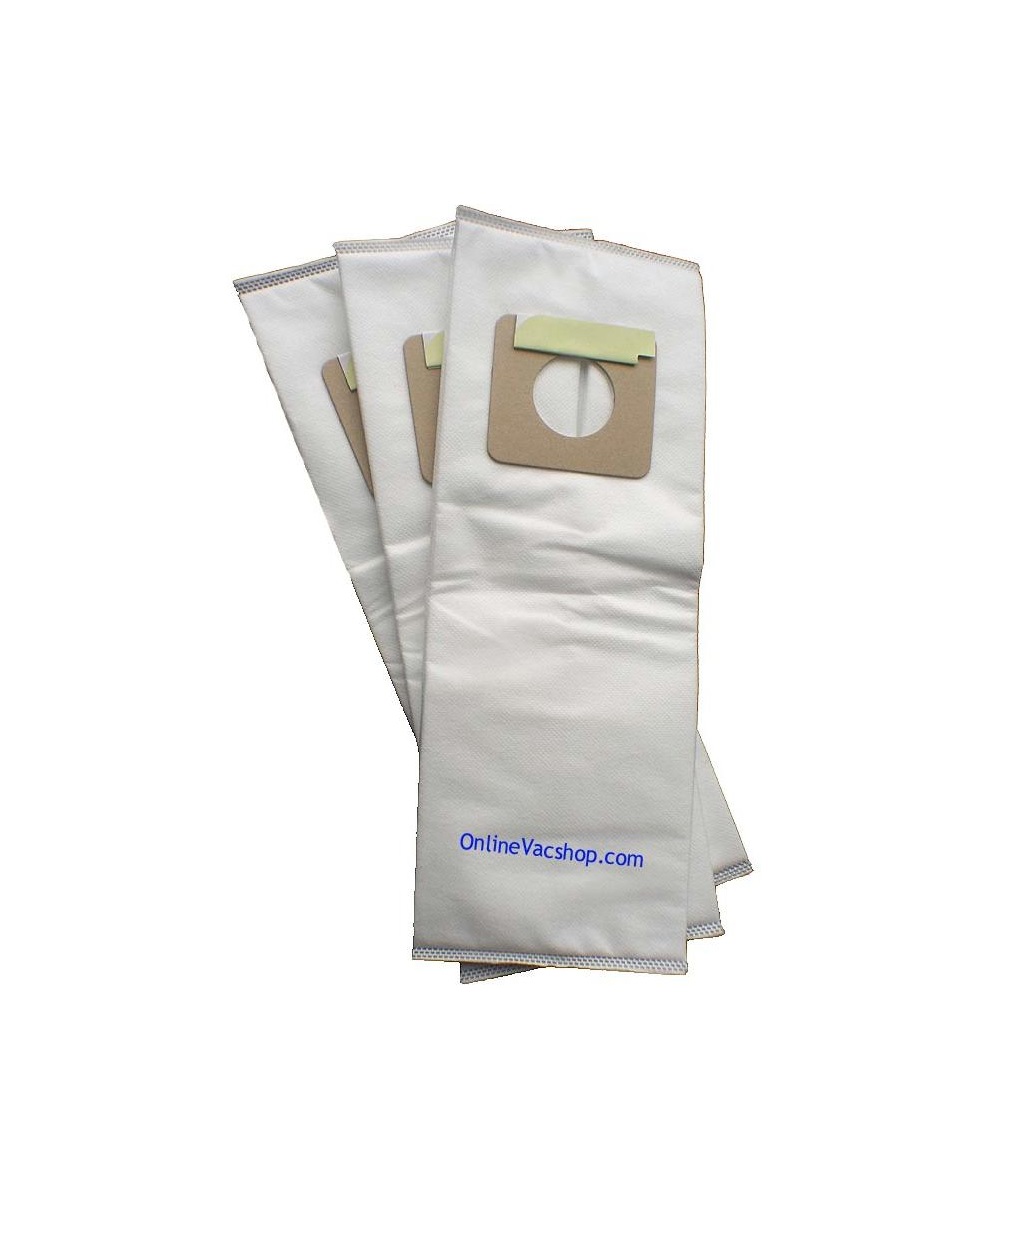 CleanMax CMH-6 HEPA Bags